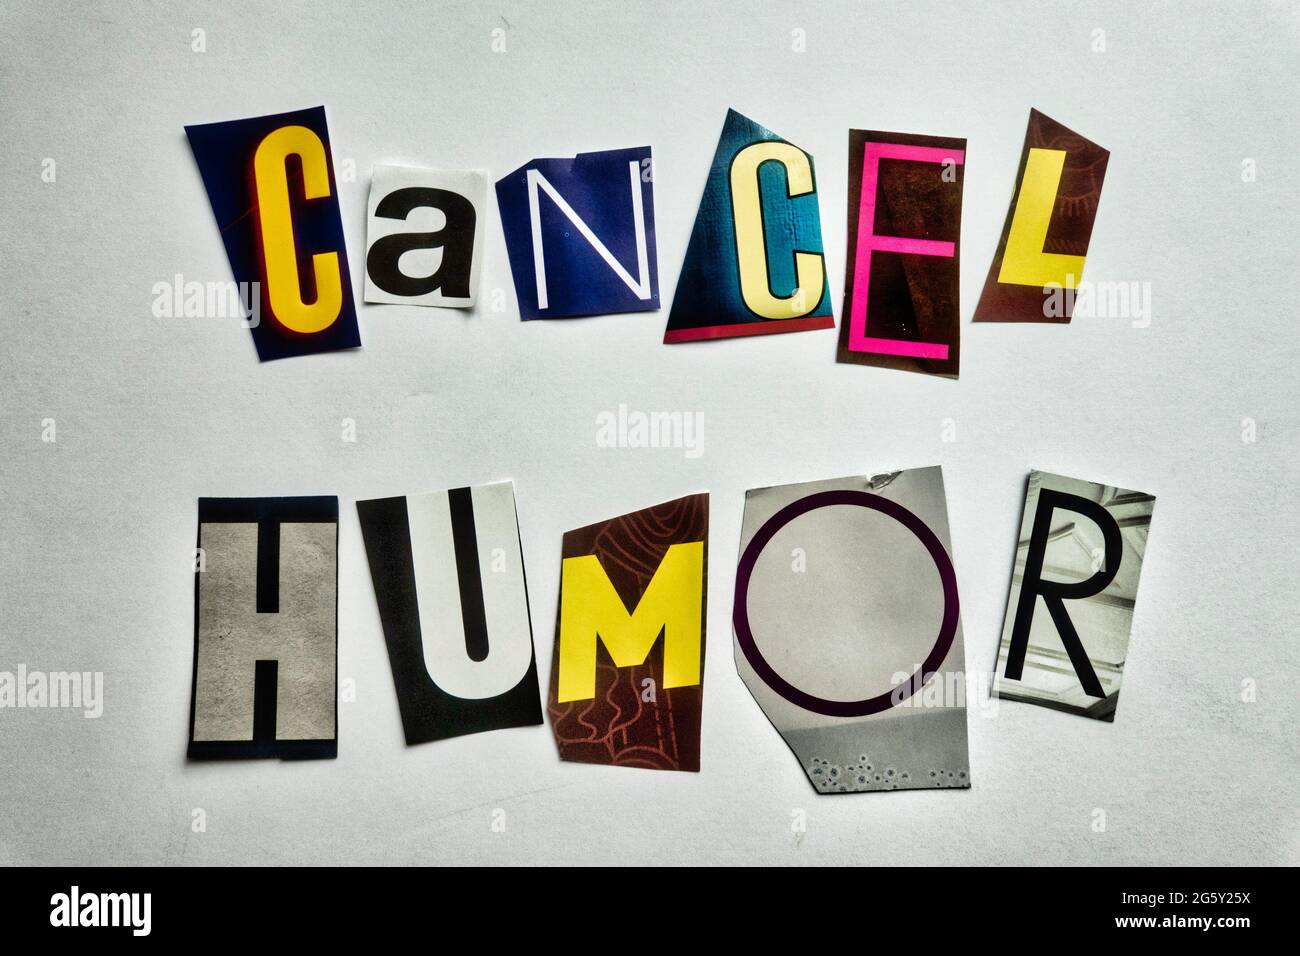 Die Worte „Cancel Humor“ mit ausgeschnittenen Papierbuchstaben in der Lösegeld-Note-Effekt-Typografie, USA Stockfoto